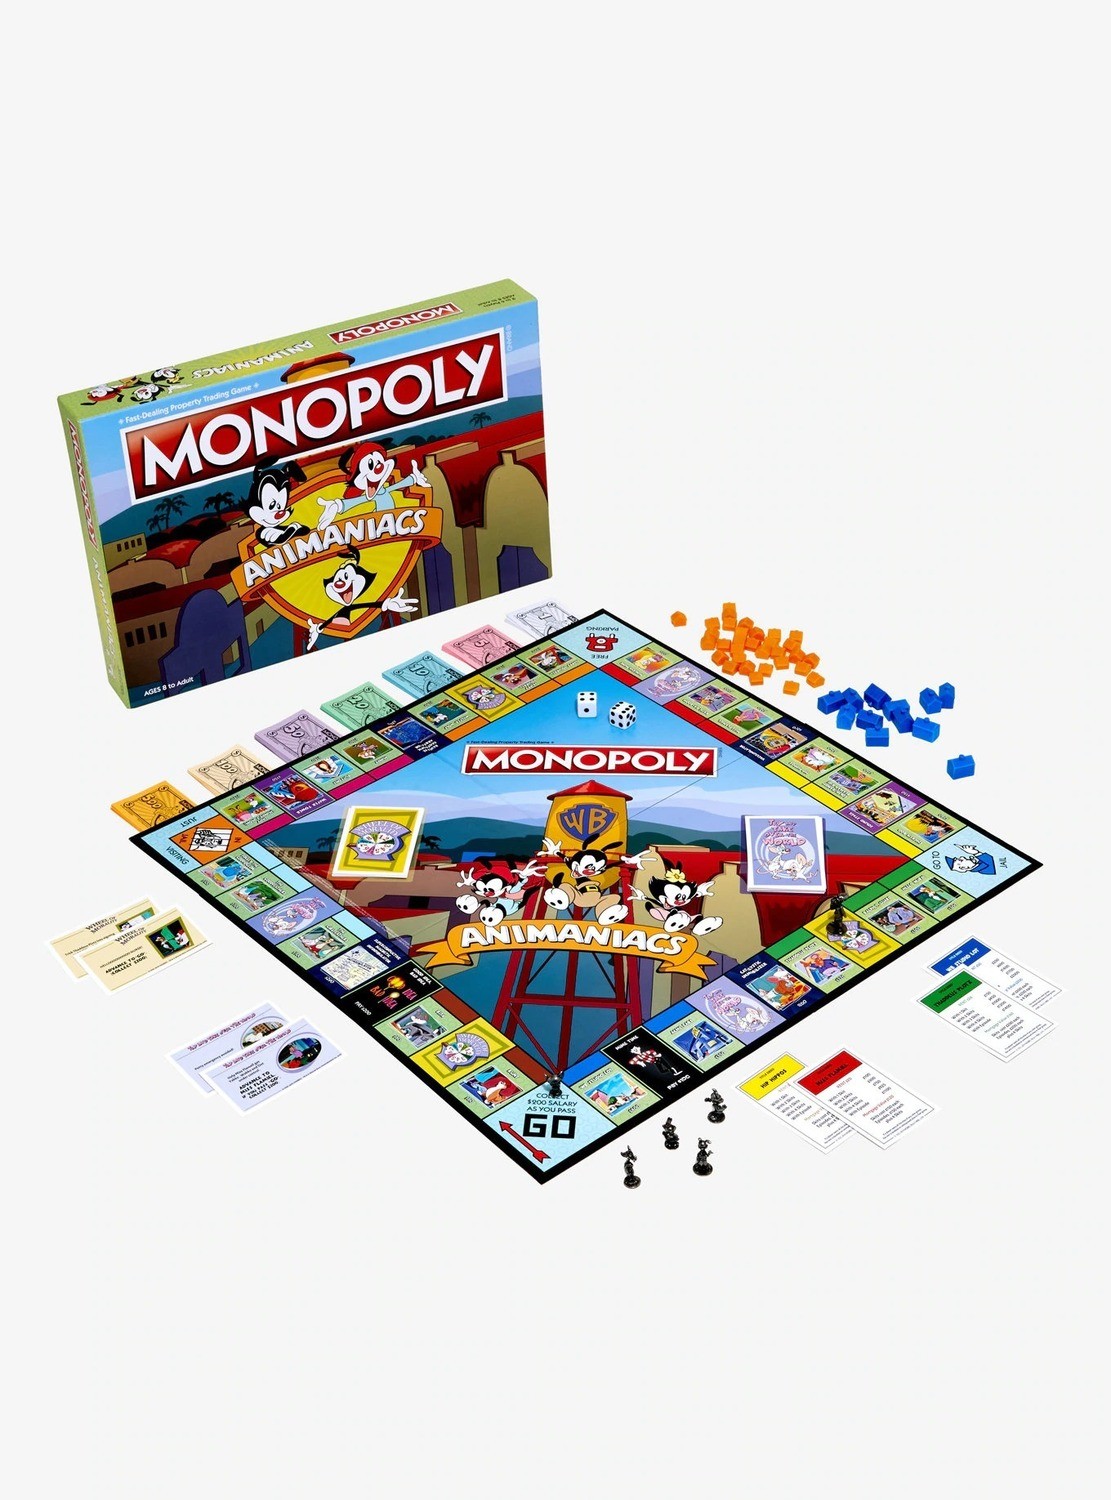 Monopoly Animaniacs